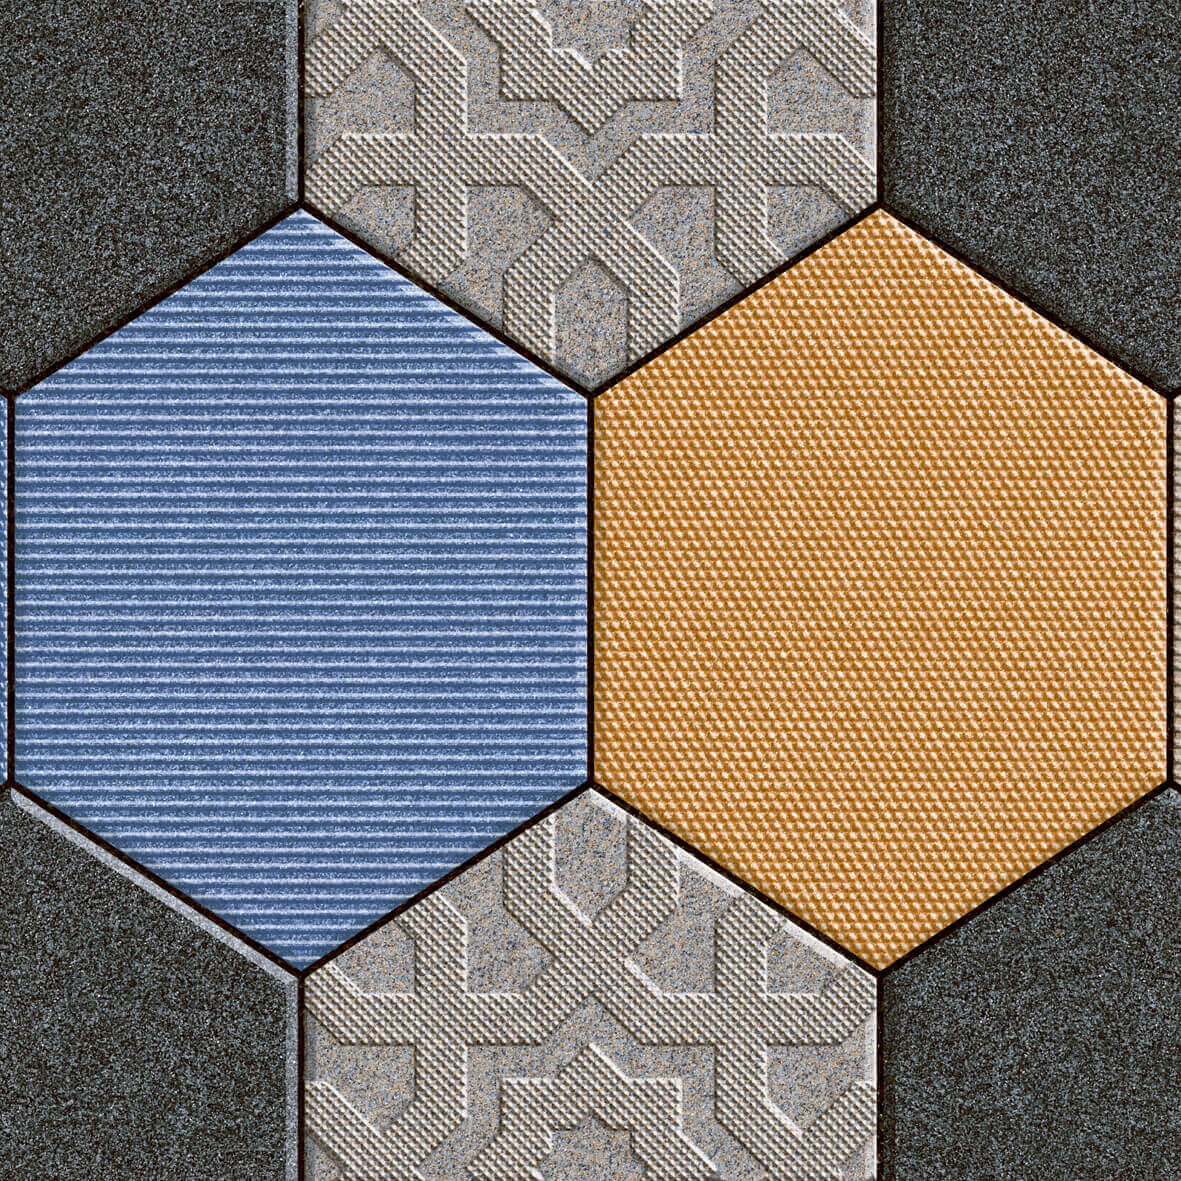 Grey Tiles for Automotive Tiles